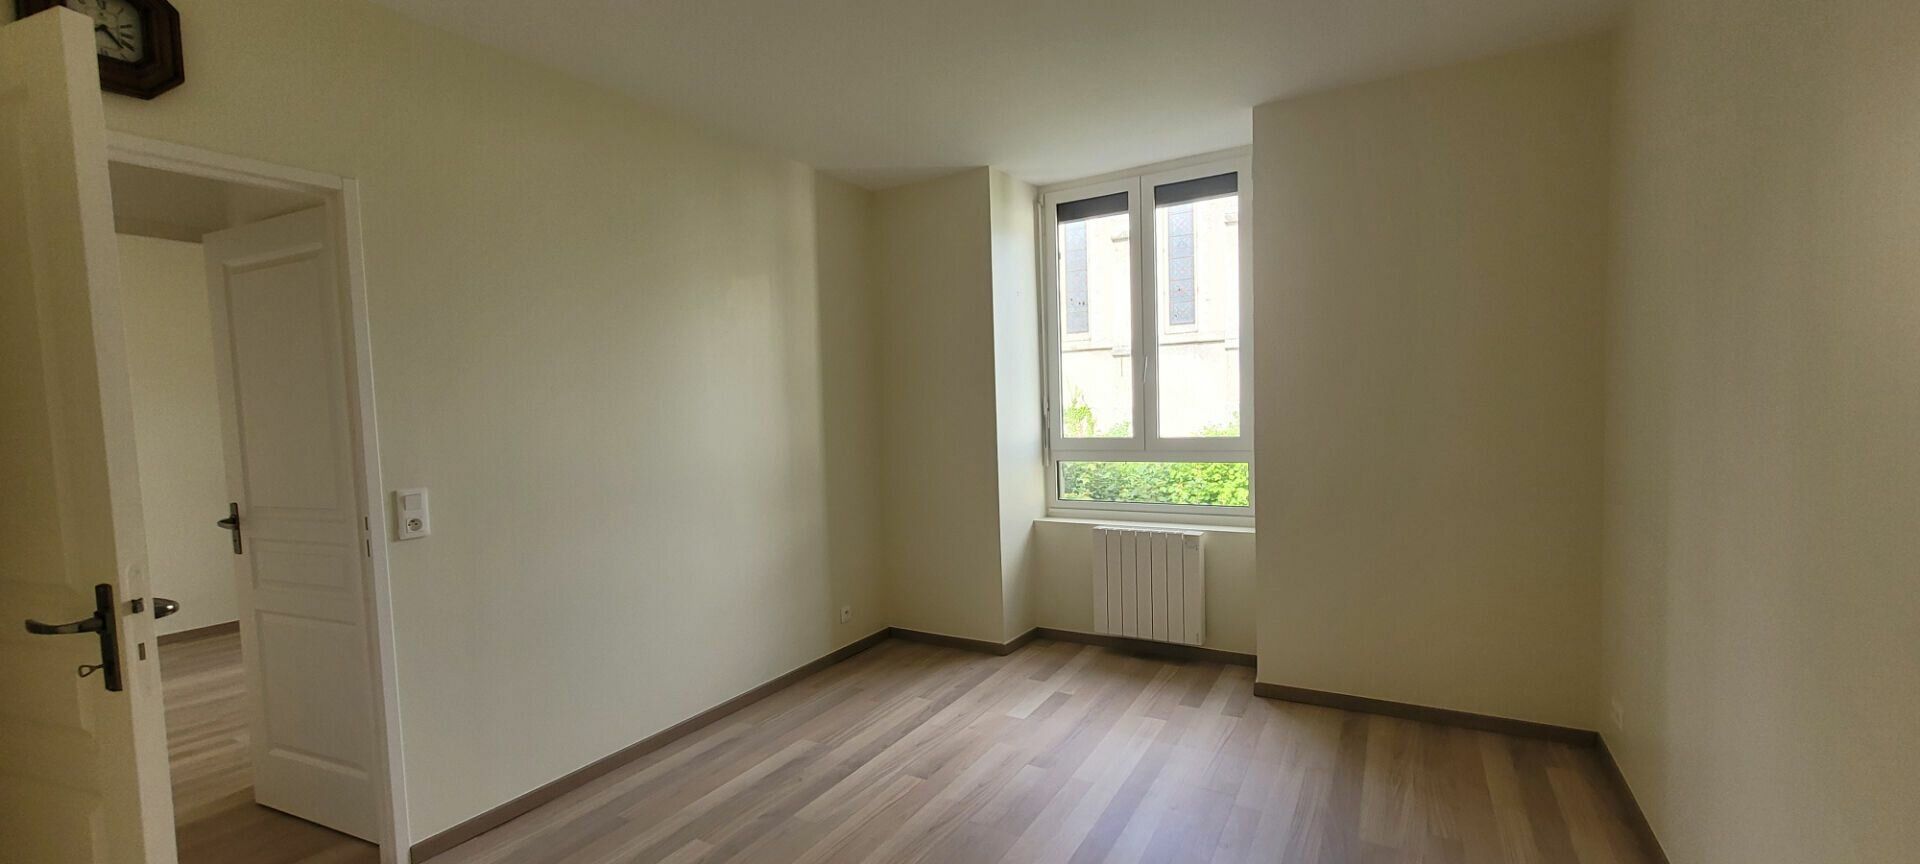 Appartement à vendre 3 109.55m2 à Saint-Brieuc vignette-6